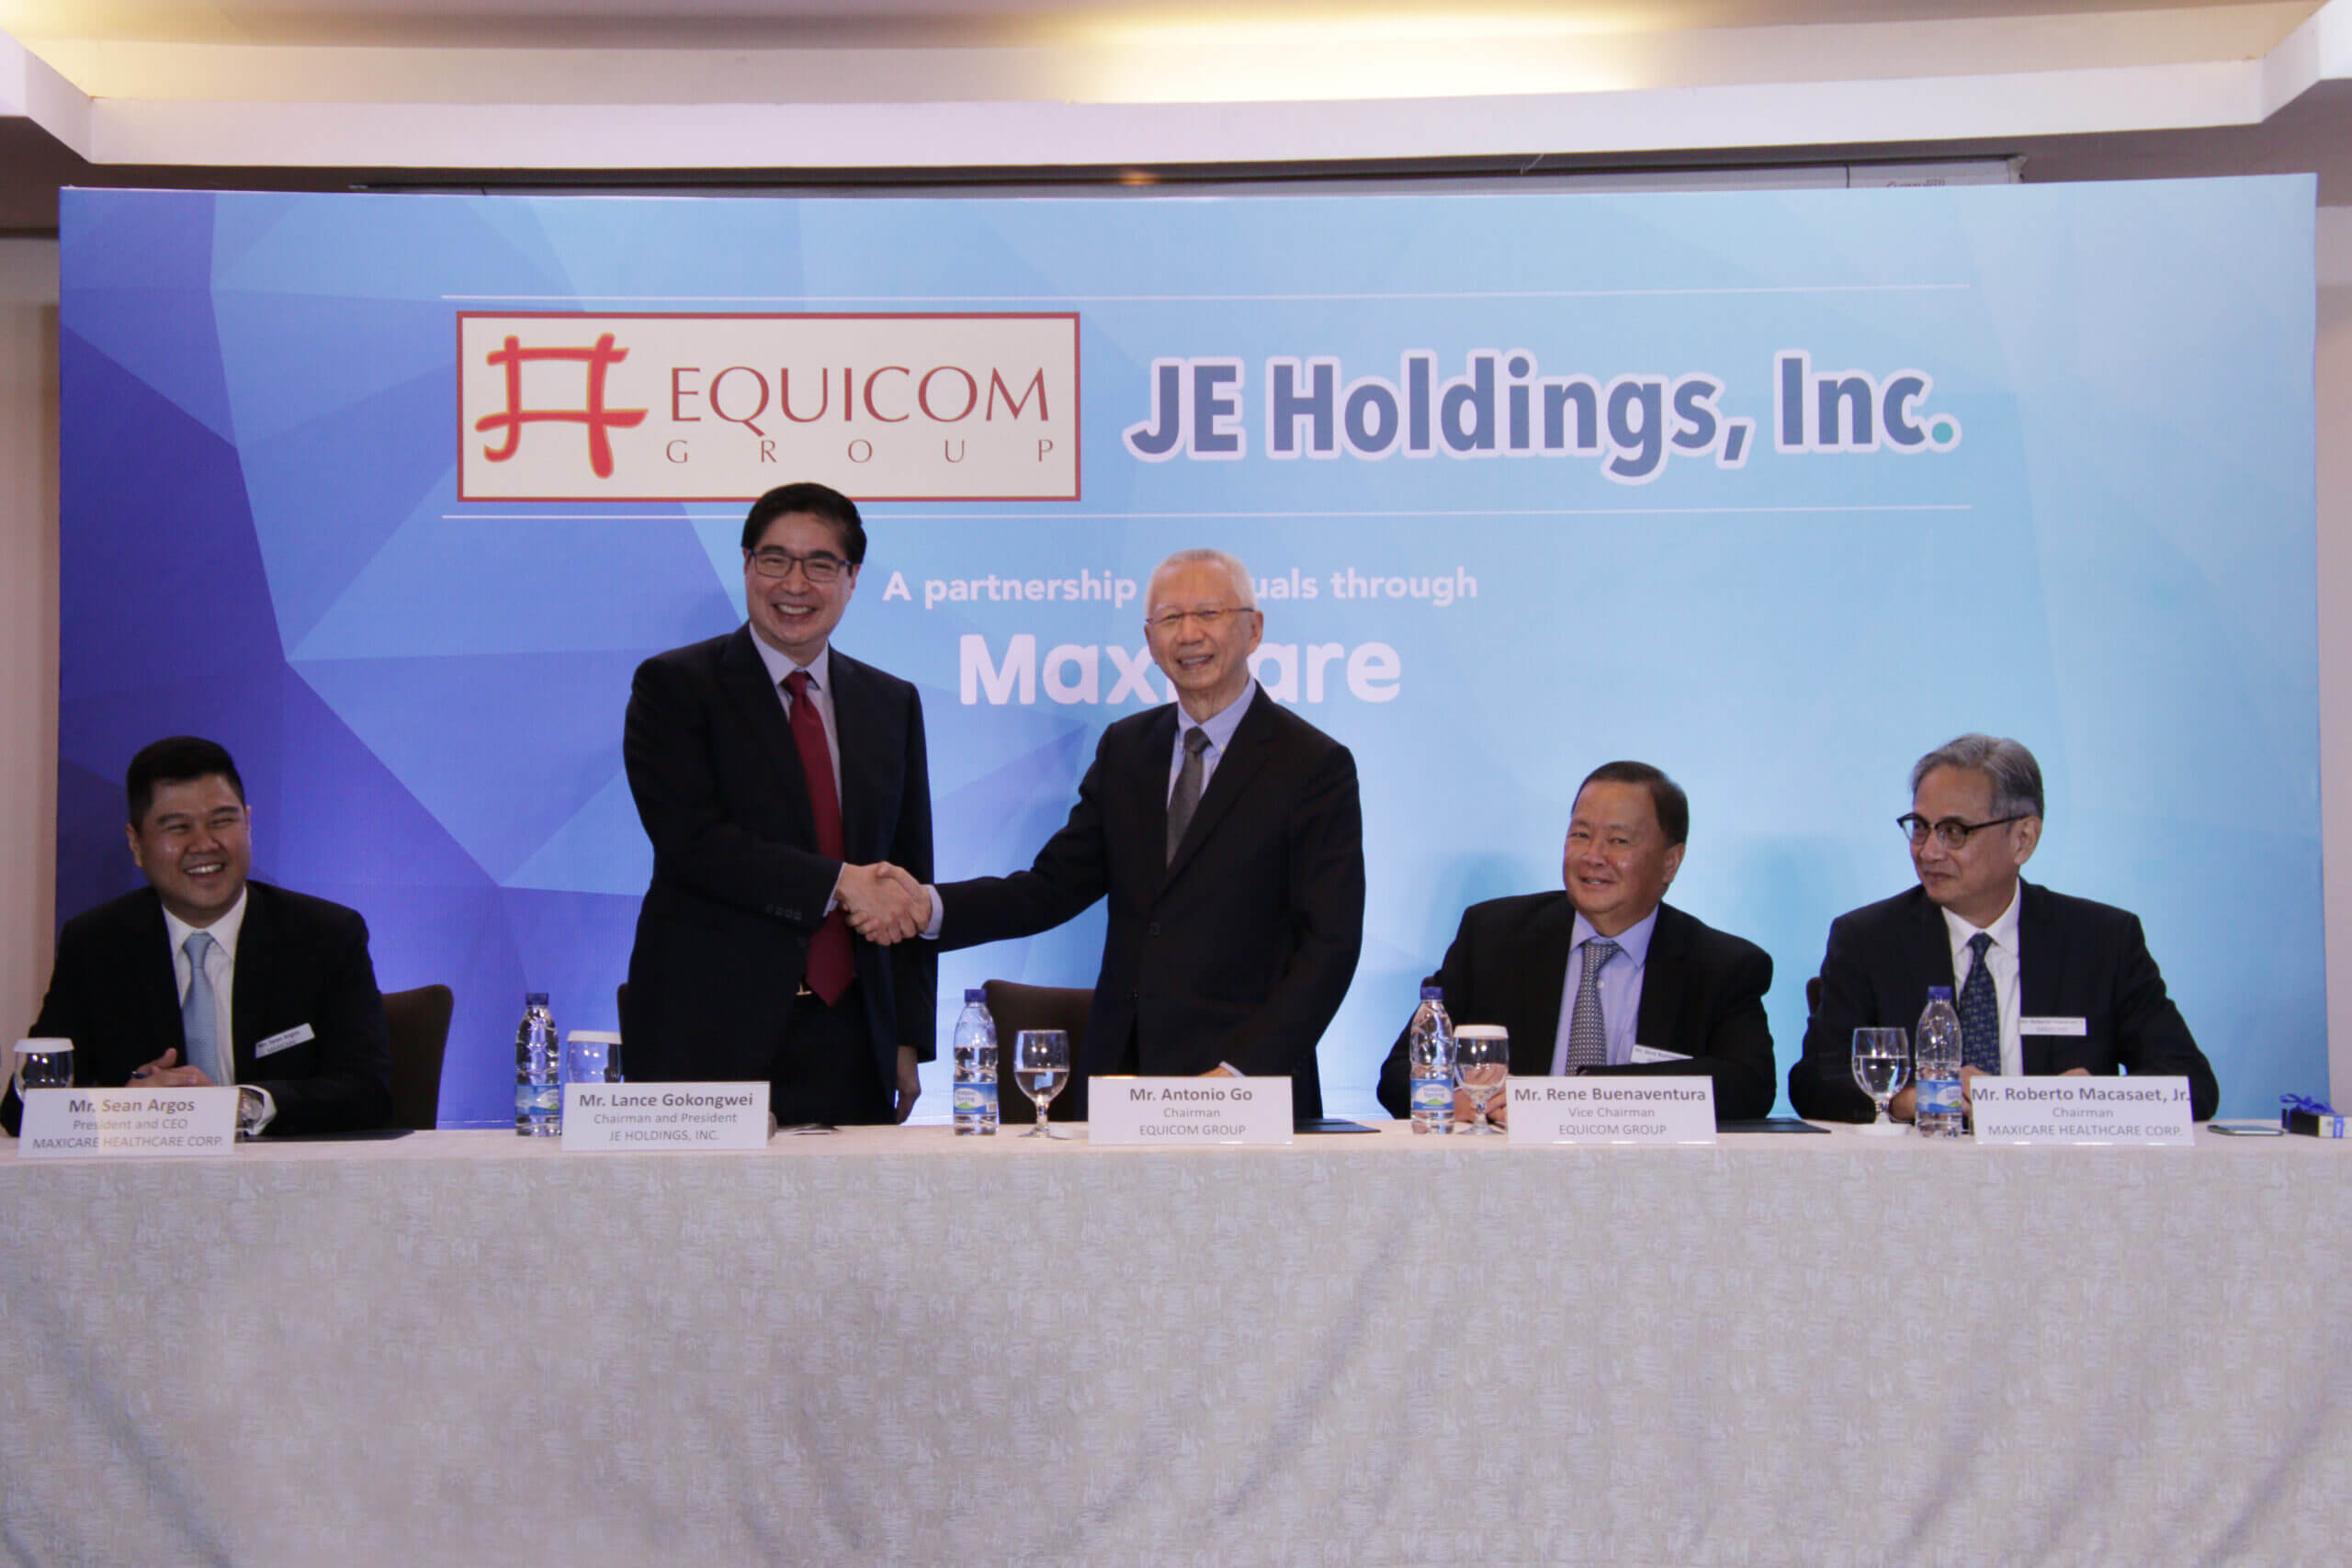 Maxicare Partnership with Equicom Group & JE Holdings, Inc